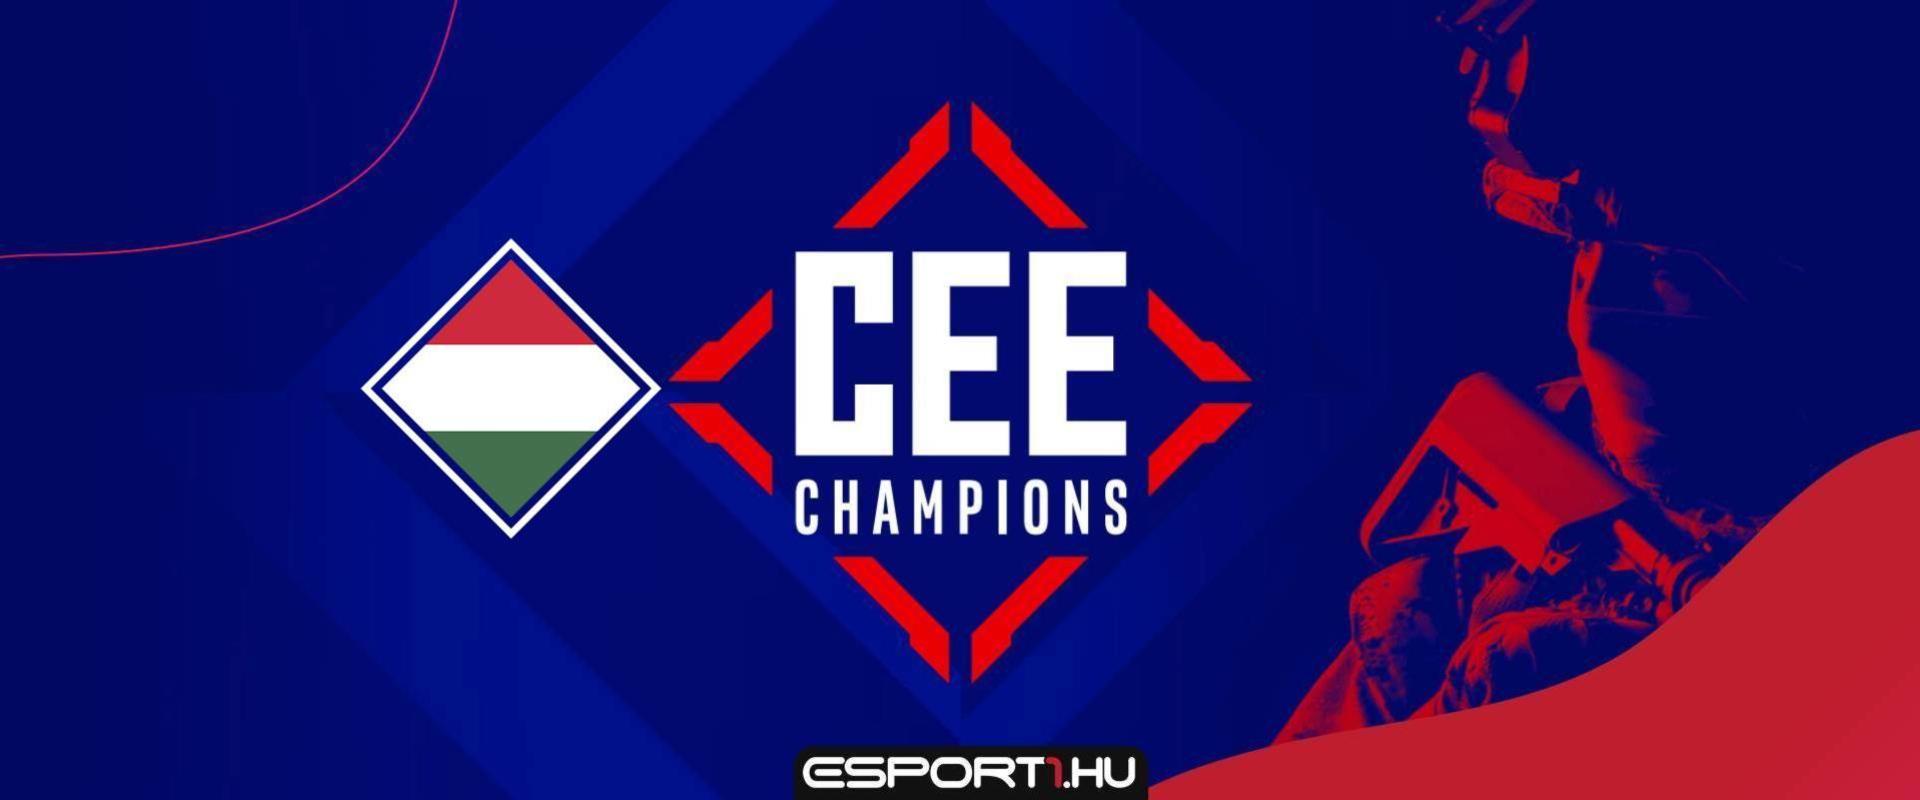 Egyetlen órád maradt a jelentkezésre, délután kezdődik a CEE Champions magyar selejtezője